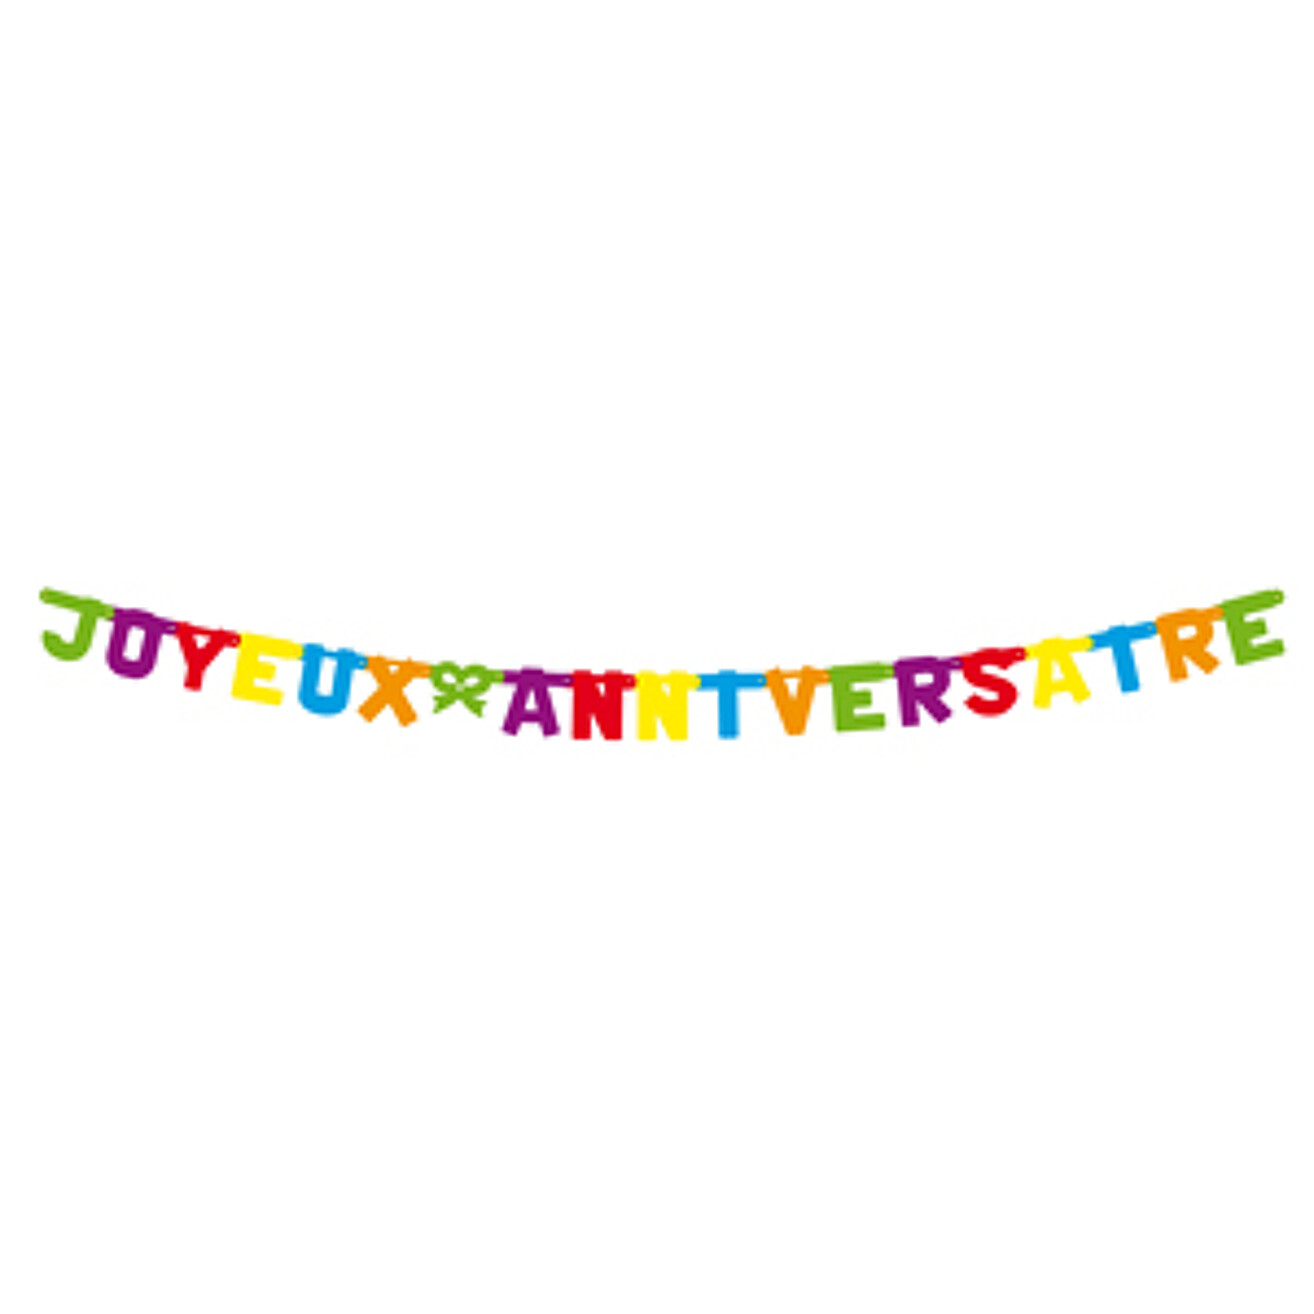 Guirlande Lettre Karton 2m X 11cm Multicolor Joyeux Anniversaire Articles Festifs Ava Be